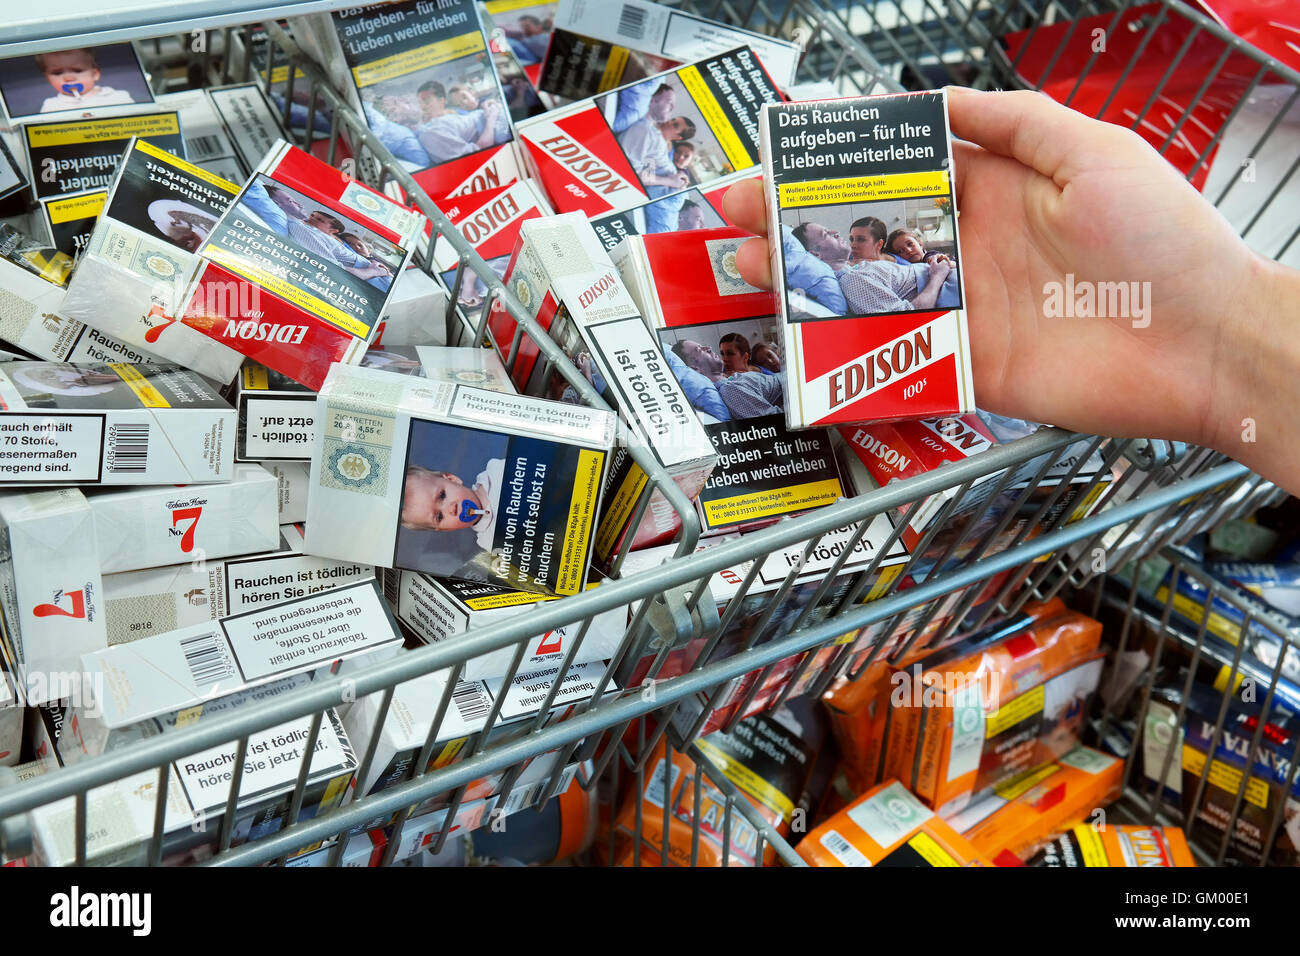 Le sigarette in un supermercato Aldi con immagini sui pacchetti di sigarette per illustrare i pericoli del fumo Foto Stock